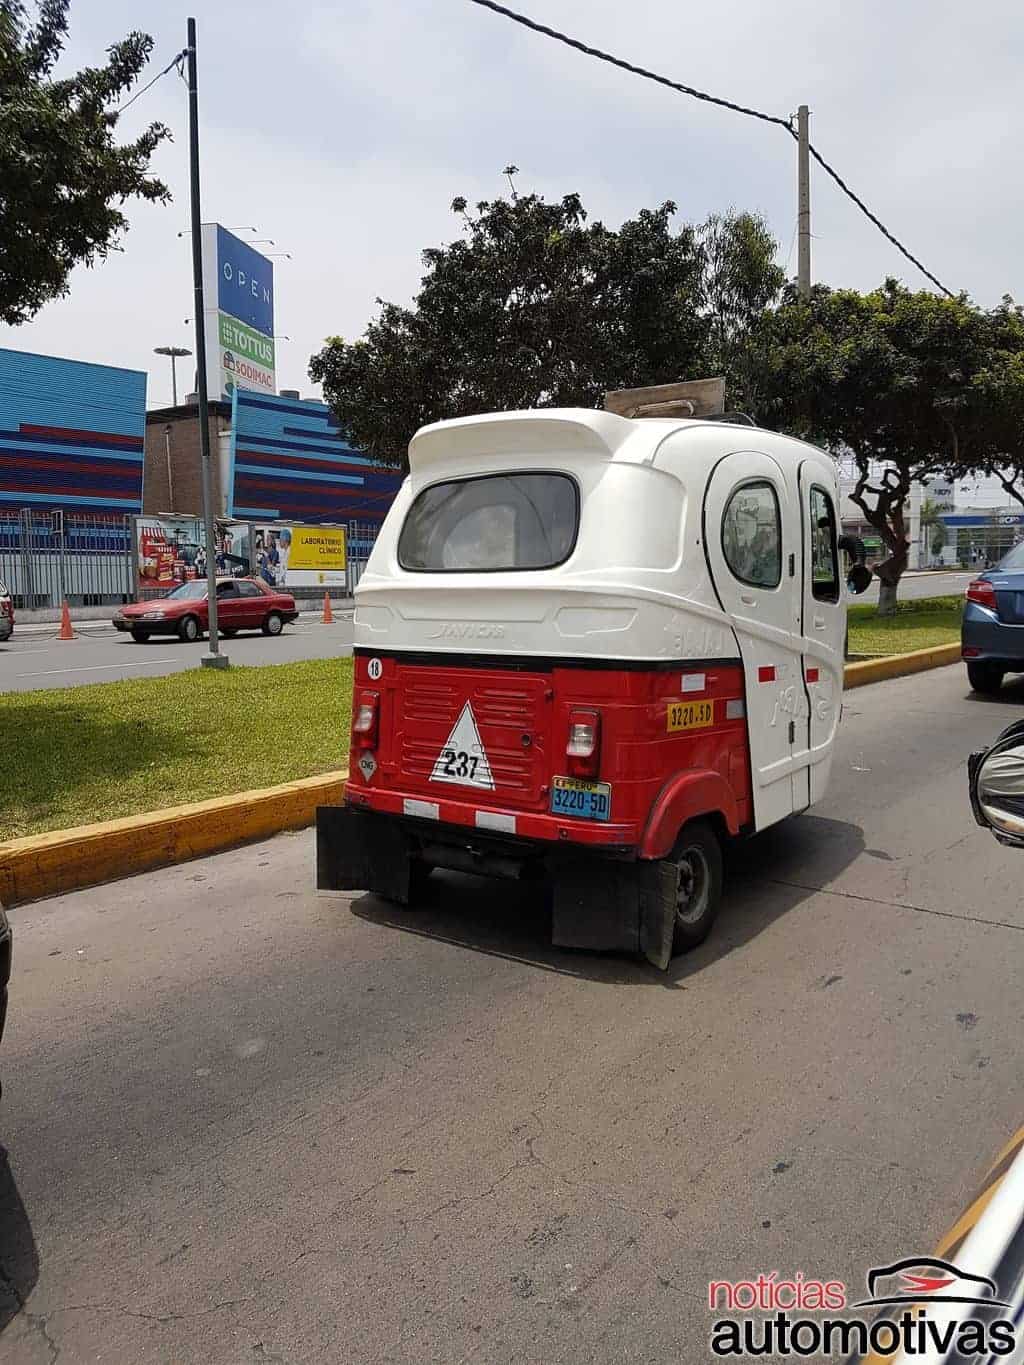 Os carros no Peru: conheça o cenário automotivo do país vizinho 